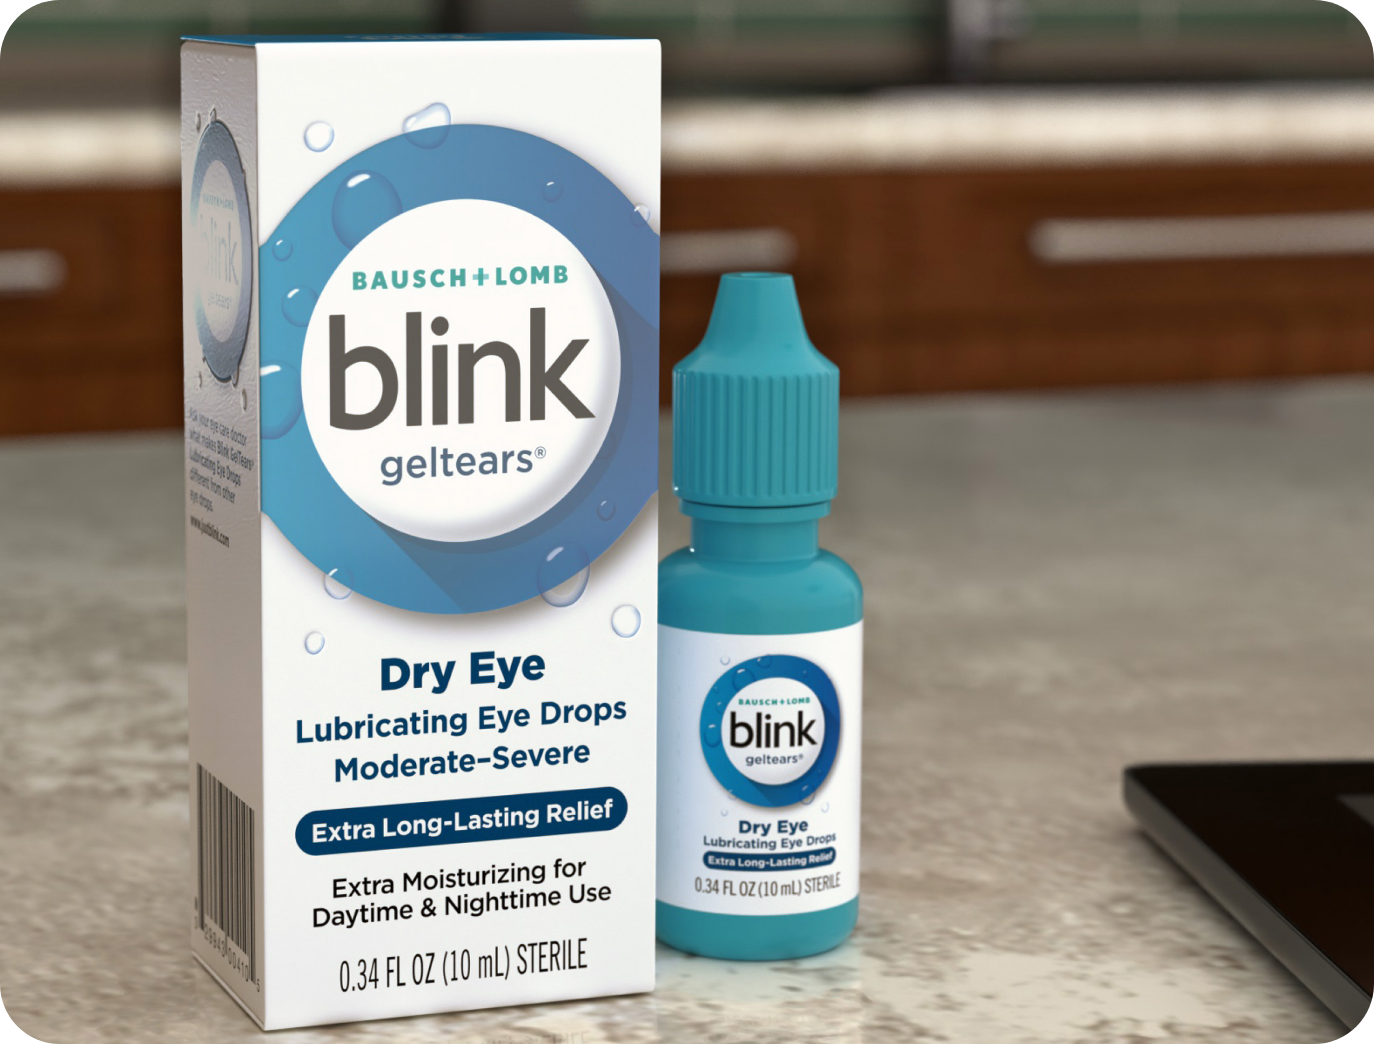 Blink GelTears Lubricating Eye Drops bottle and carton on a desk